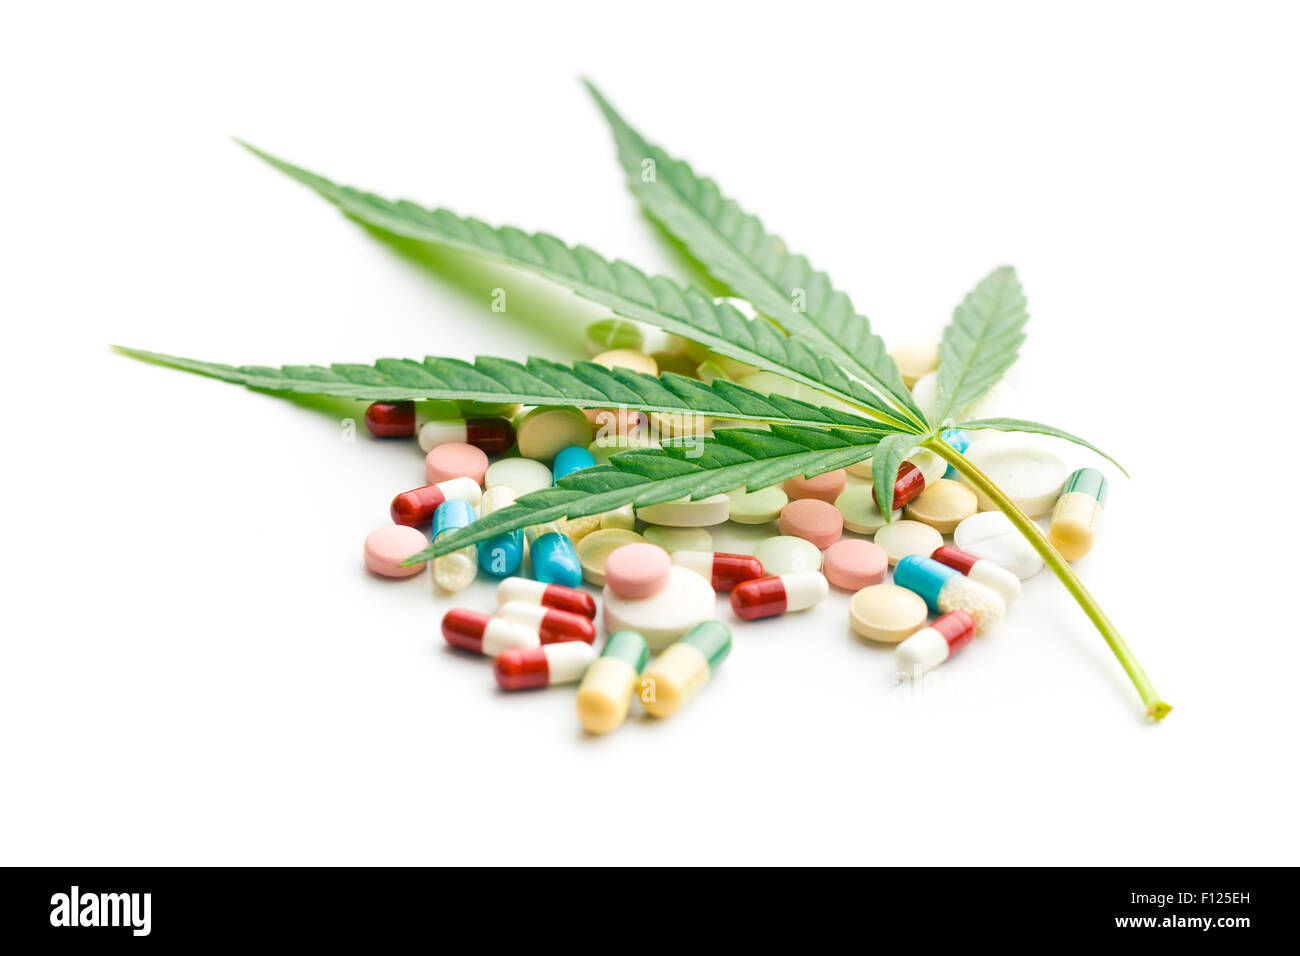 La feuille de cannabis et de médicaments Banque D'Images